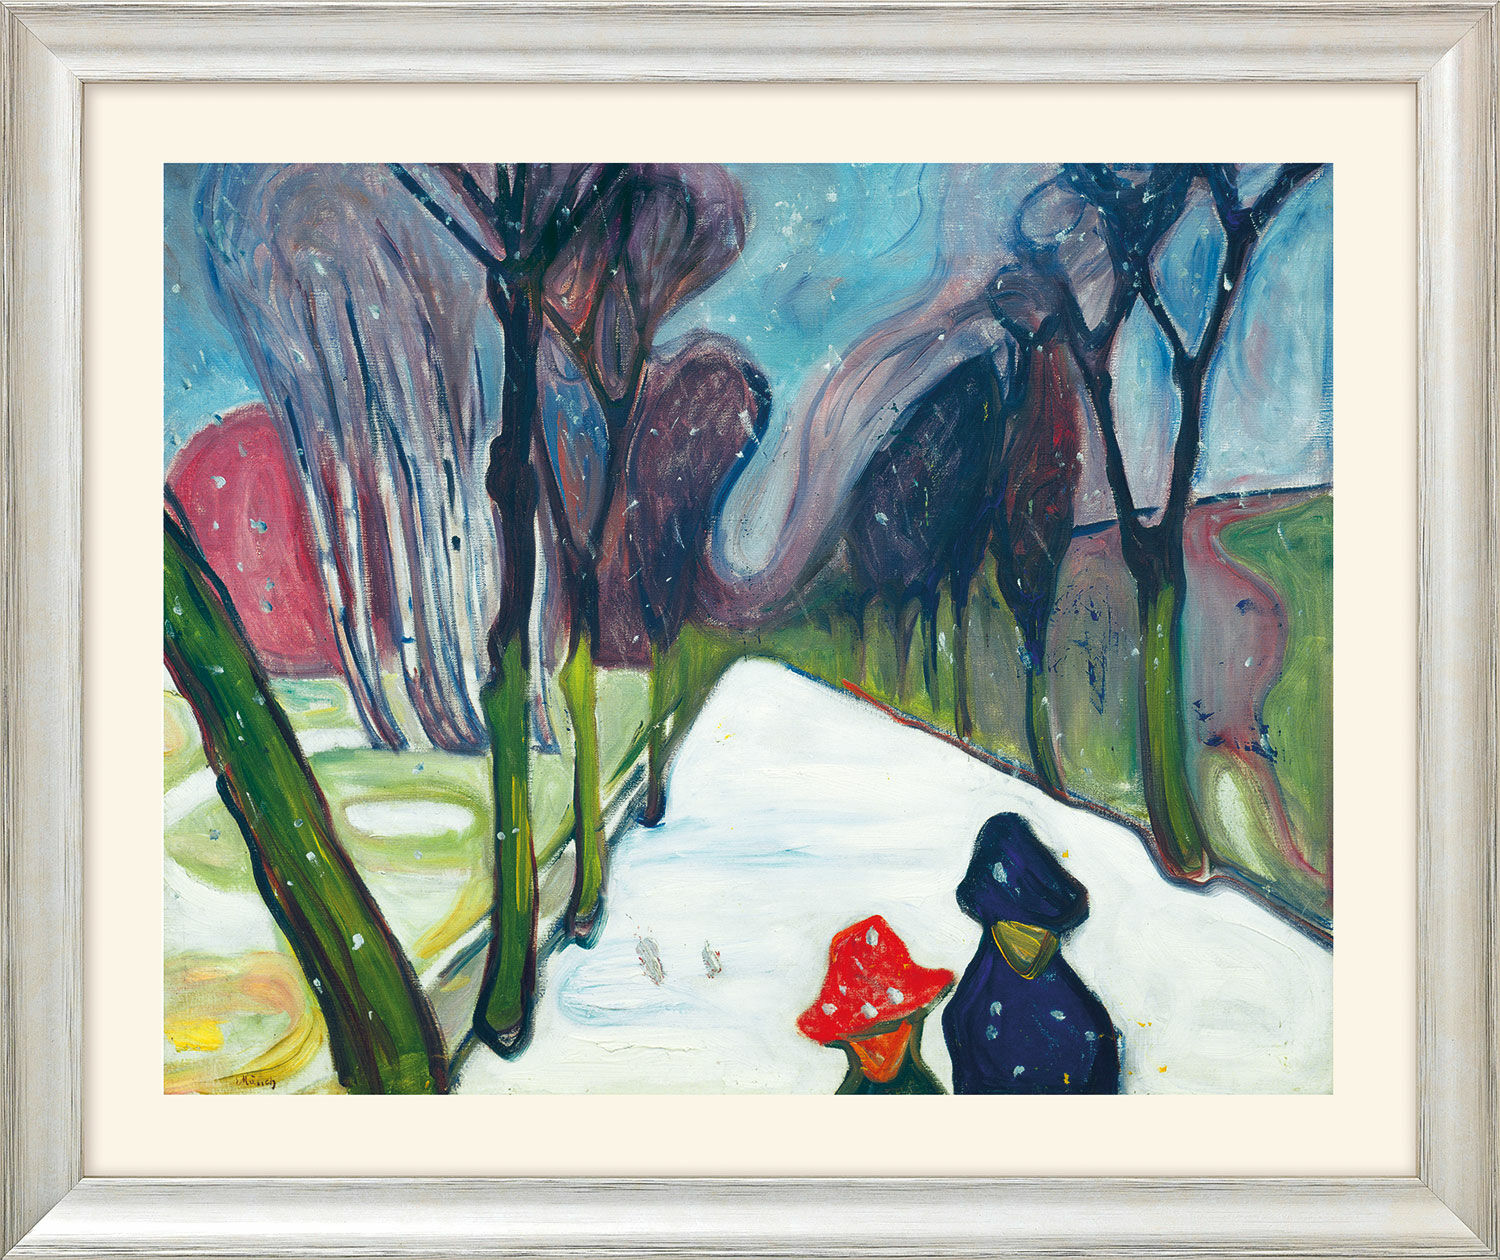 Tableau "Avenue dans une tempête de neige" (1906) - extrait du "Cycle des saisons", version argentée encadrée von Edvard Munch